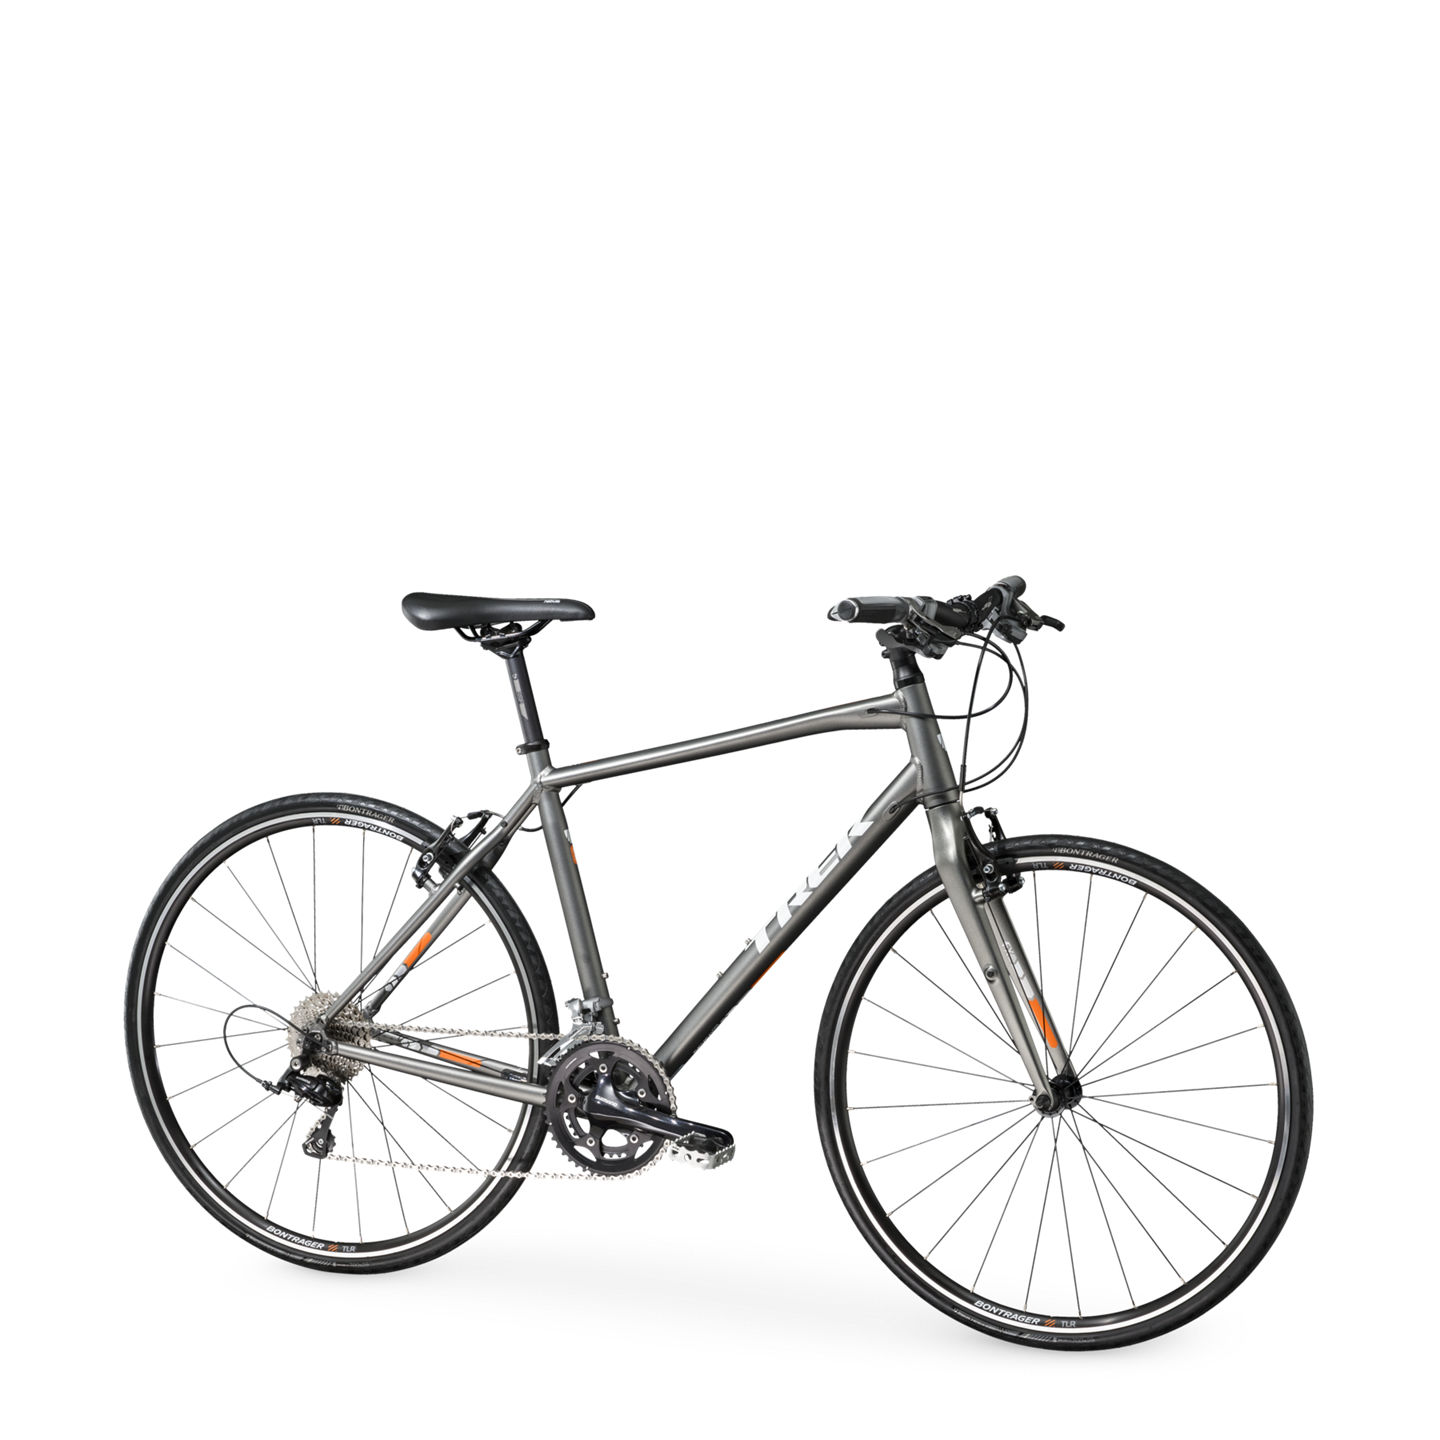 Trek 7.5 FX Hybrid Bike 2015 White